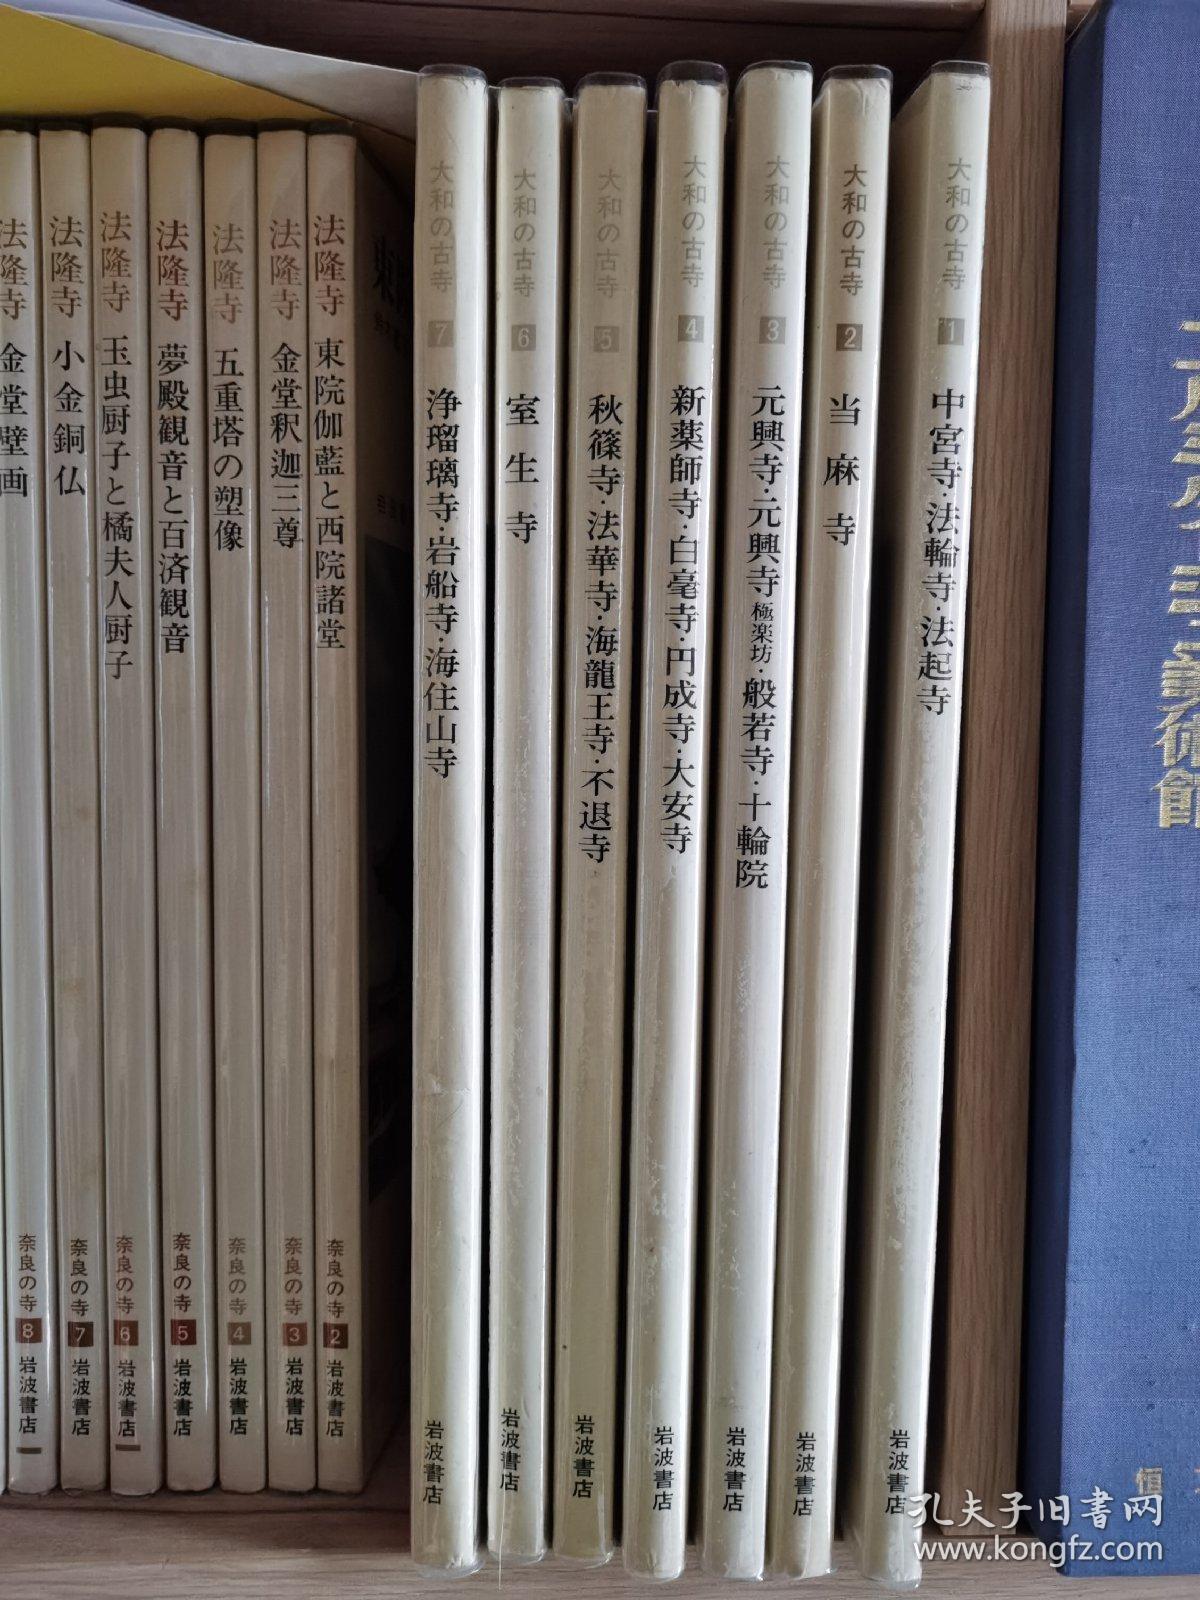 国内现货 大和的古寺 岩波书店 7册全